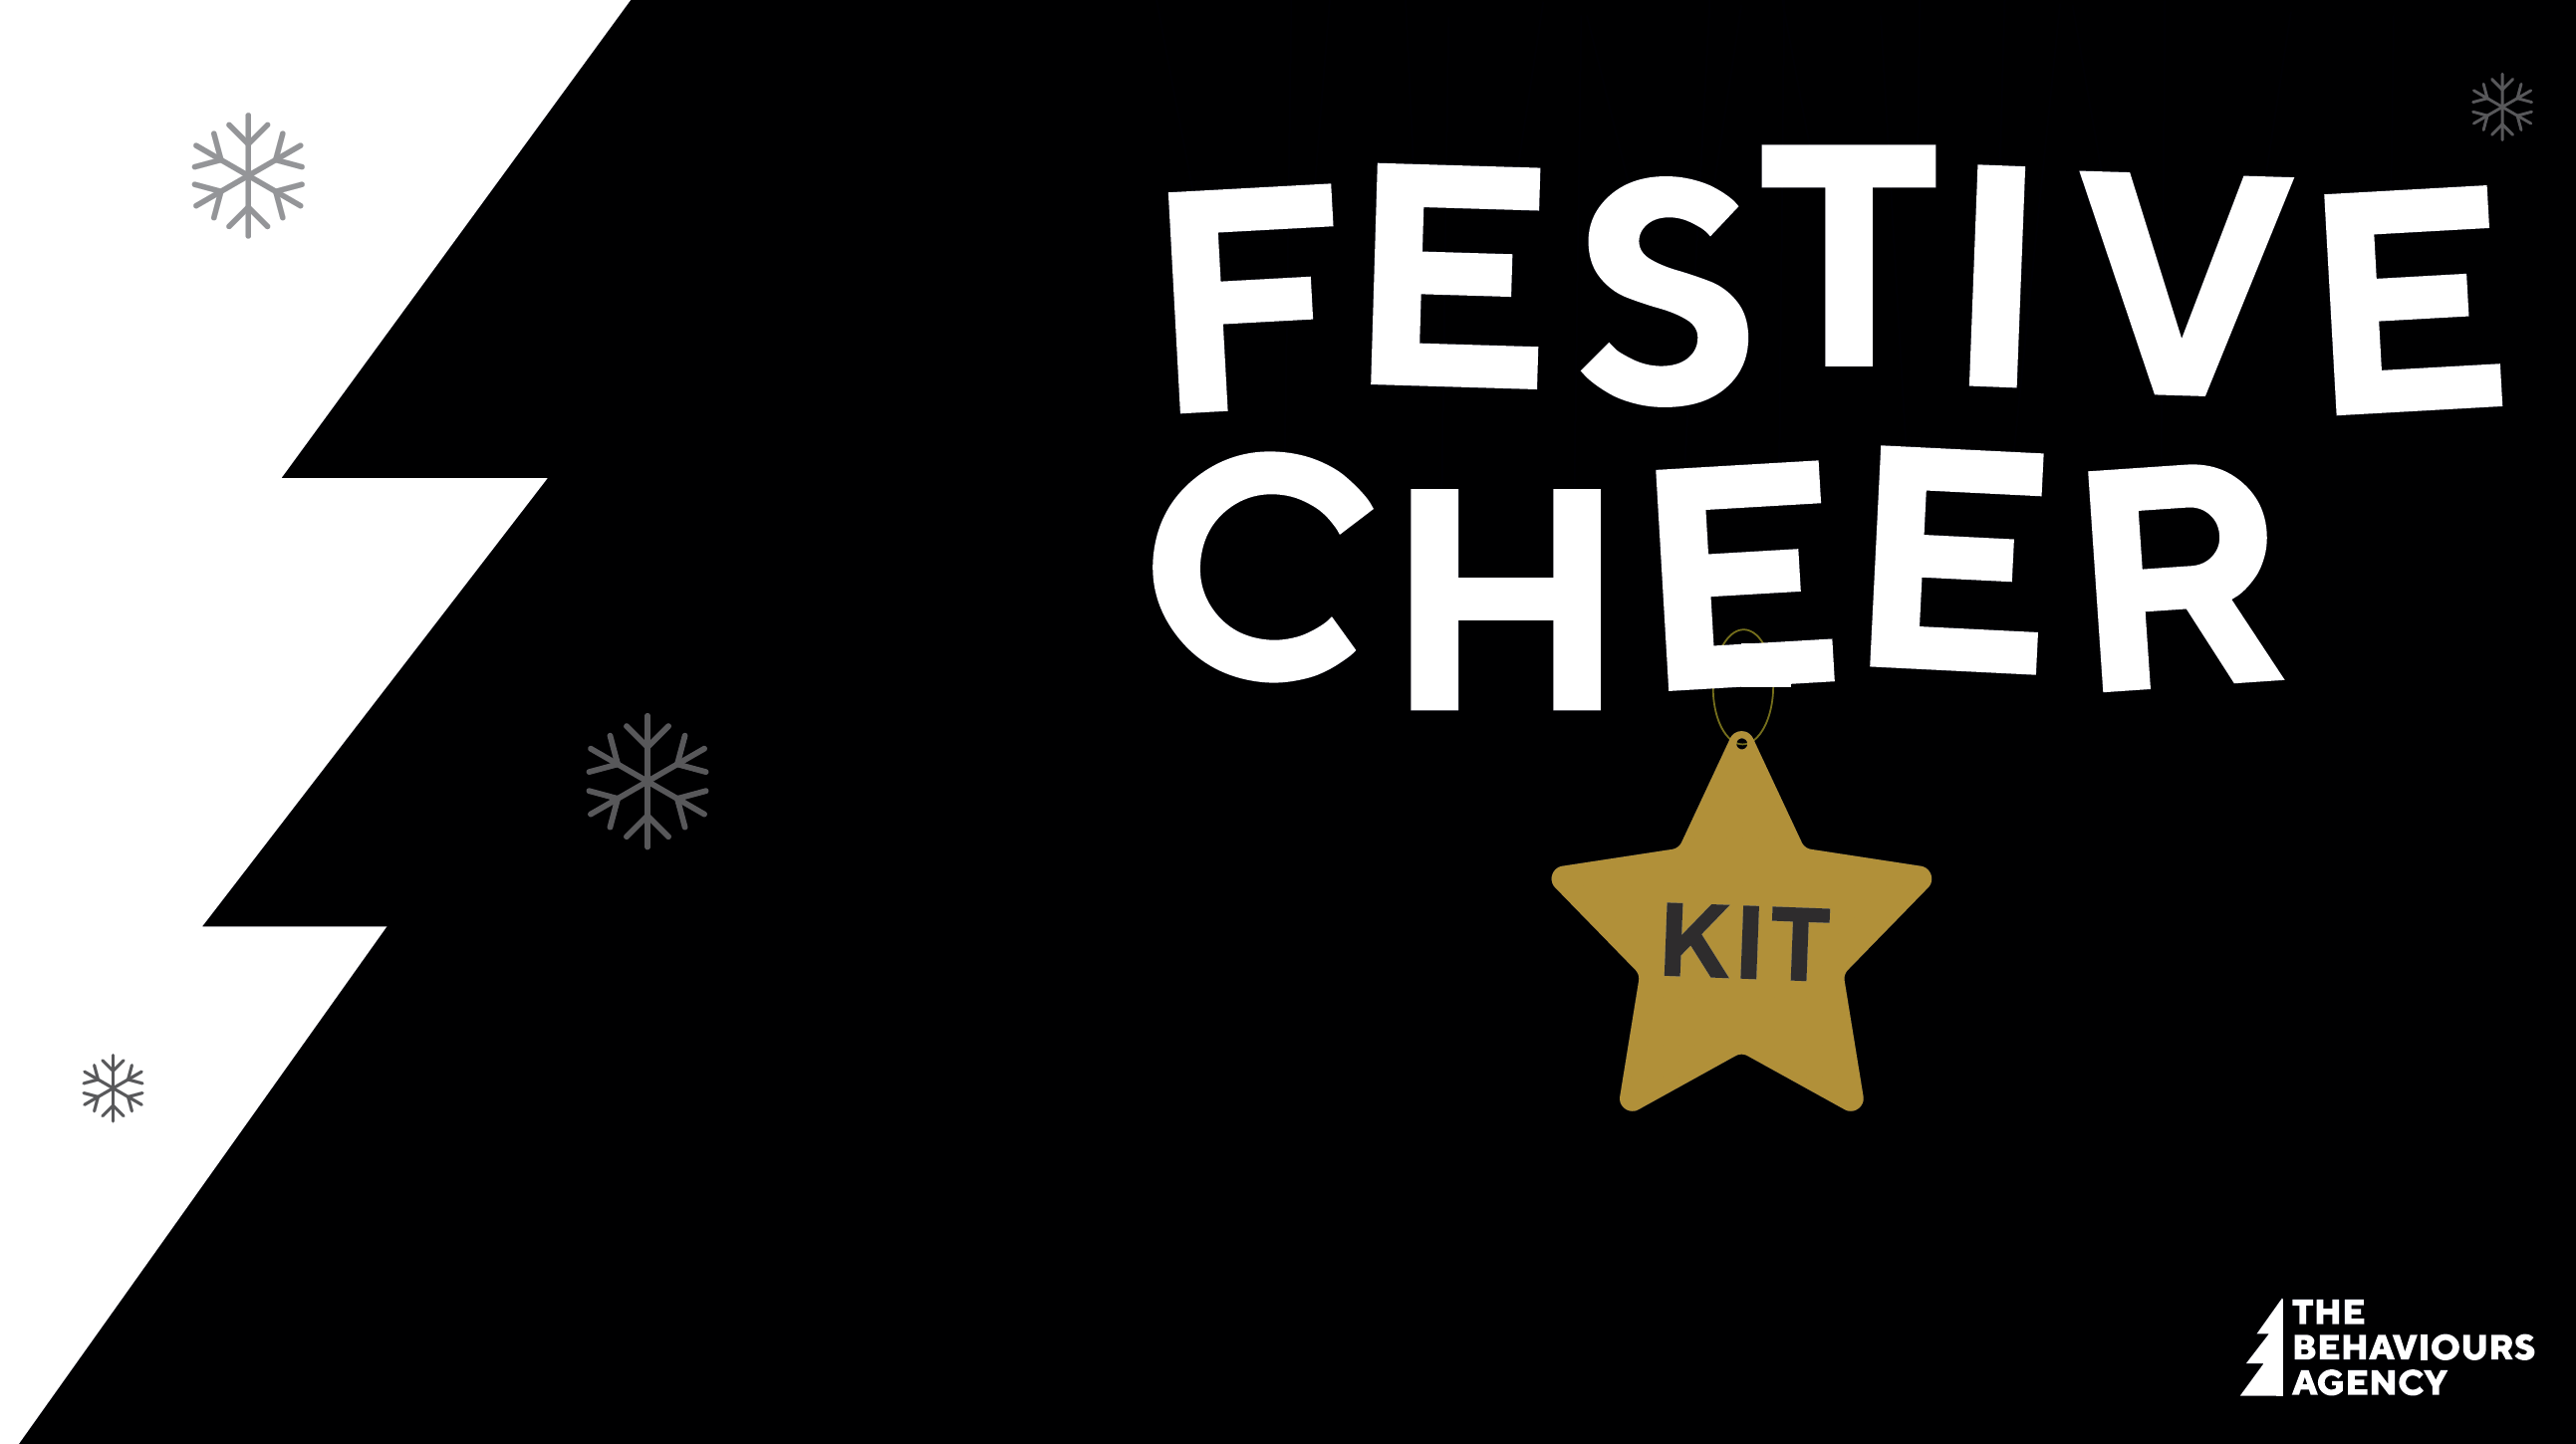 festive cheer kit PDF